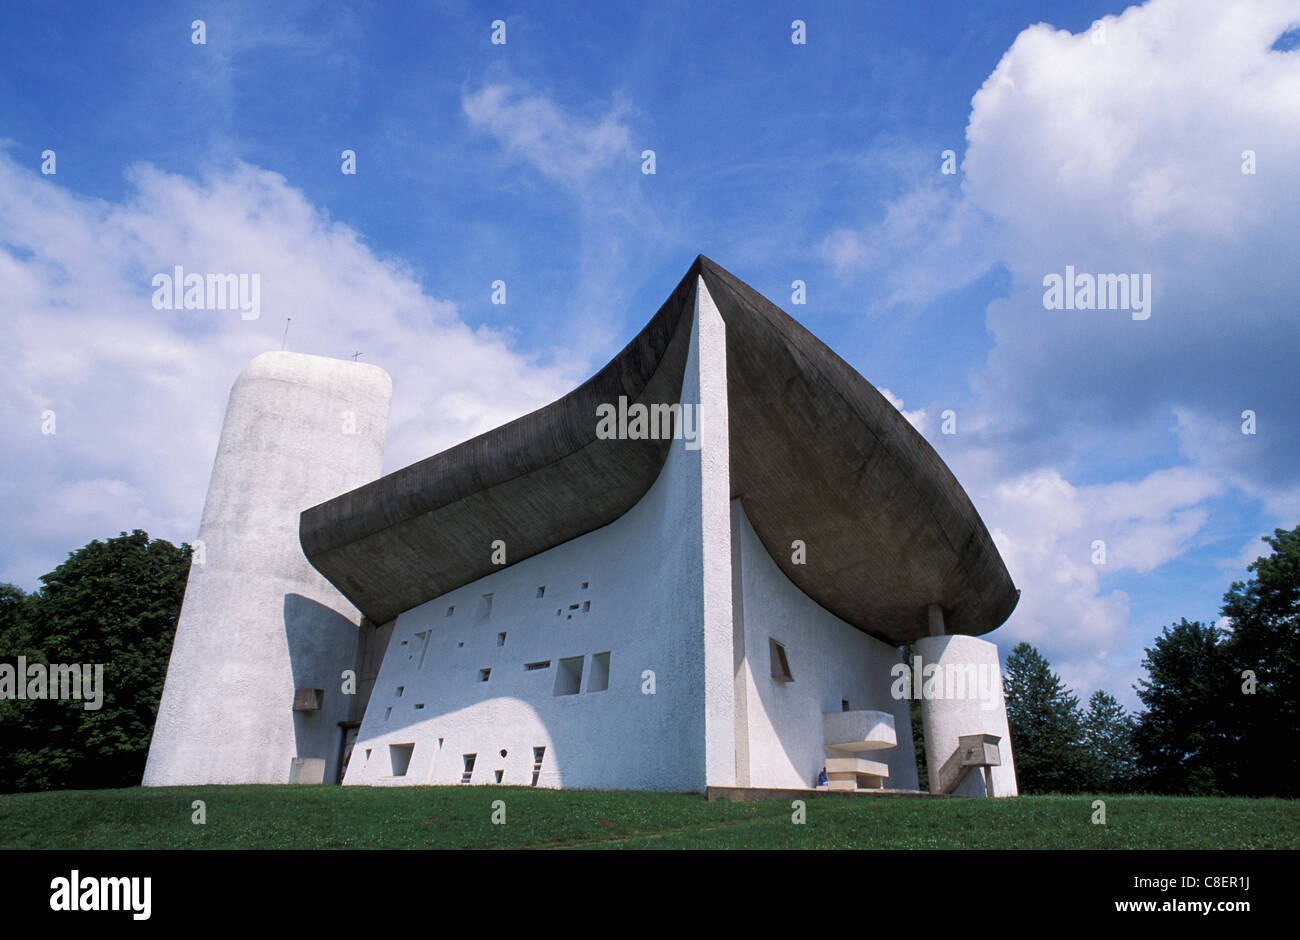 Notre Dame Du Haut, Le Corbusier, Ronchamp, Franche-Comte, France, Europe, church Stock Photo